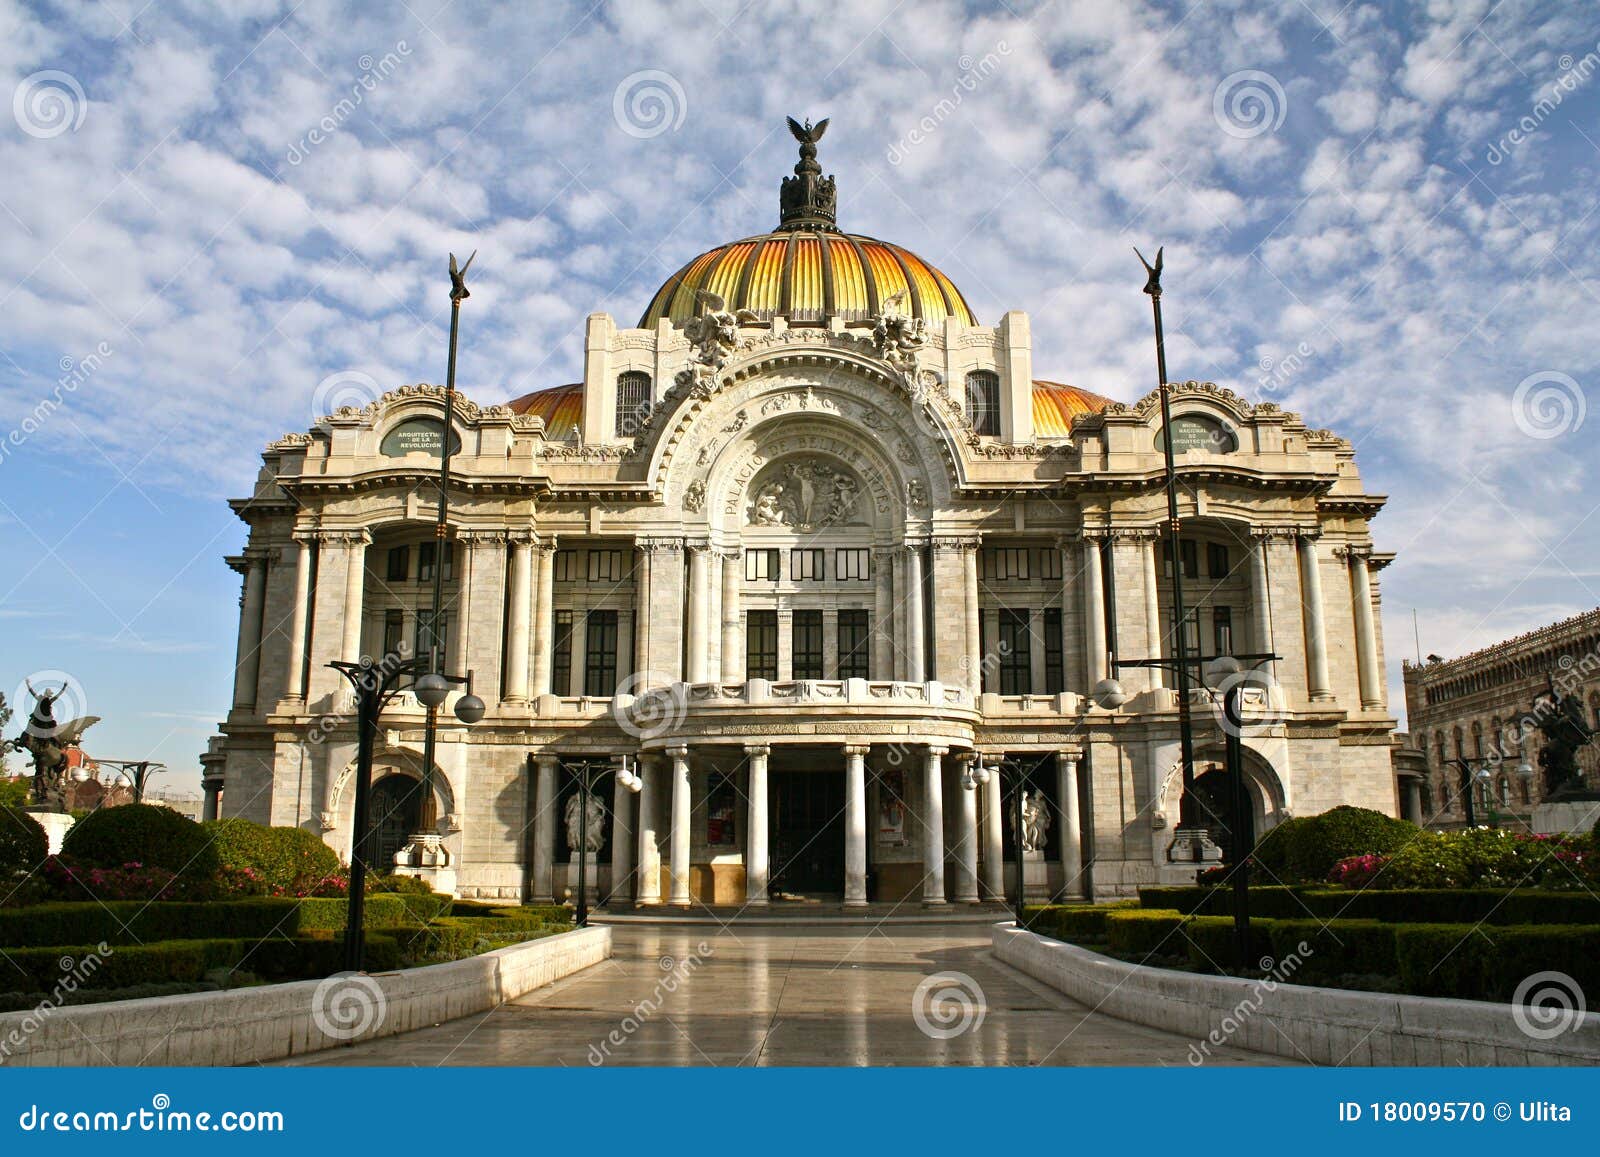 bellas artes palace, mexico city